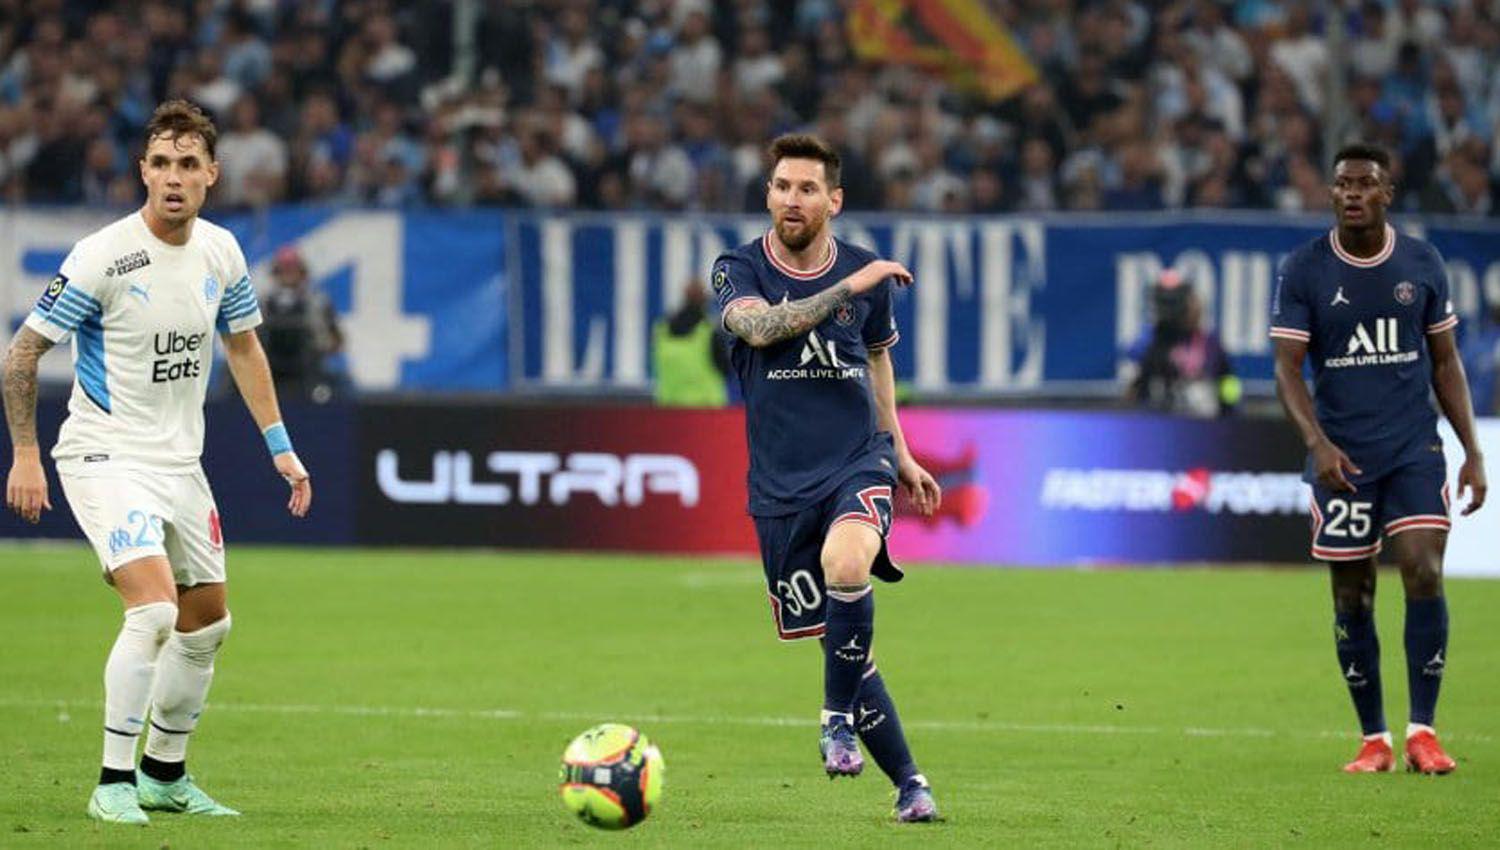 Discreta actuacioacuten de Messi en su primer claacutesico con PSG ante Marsella